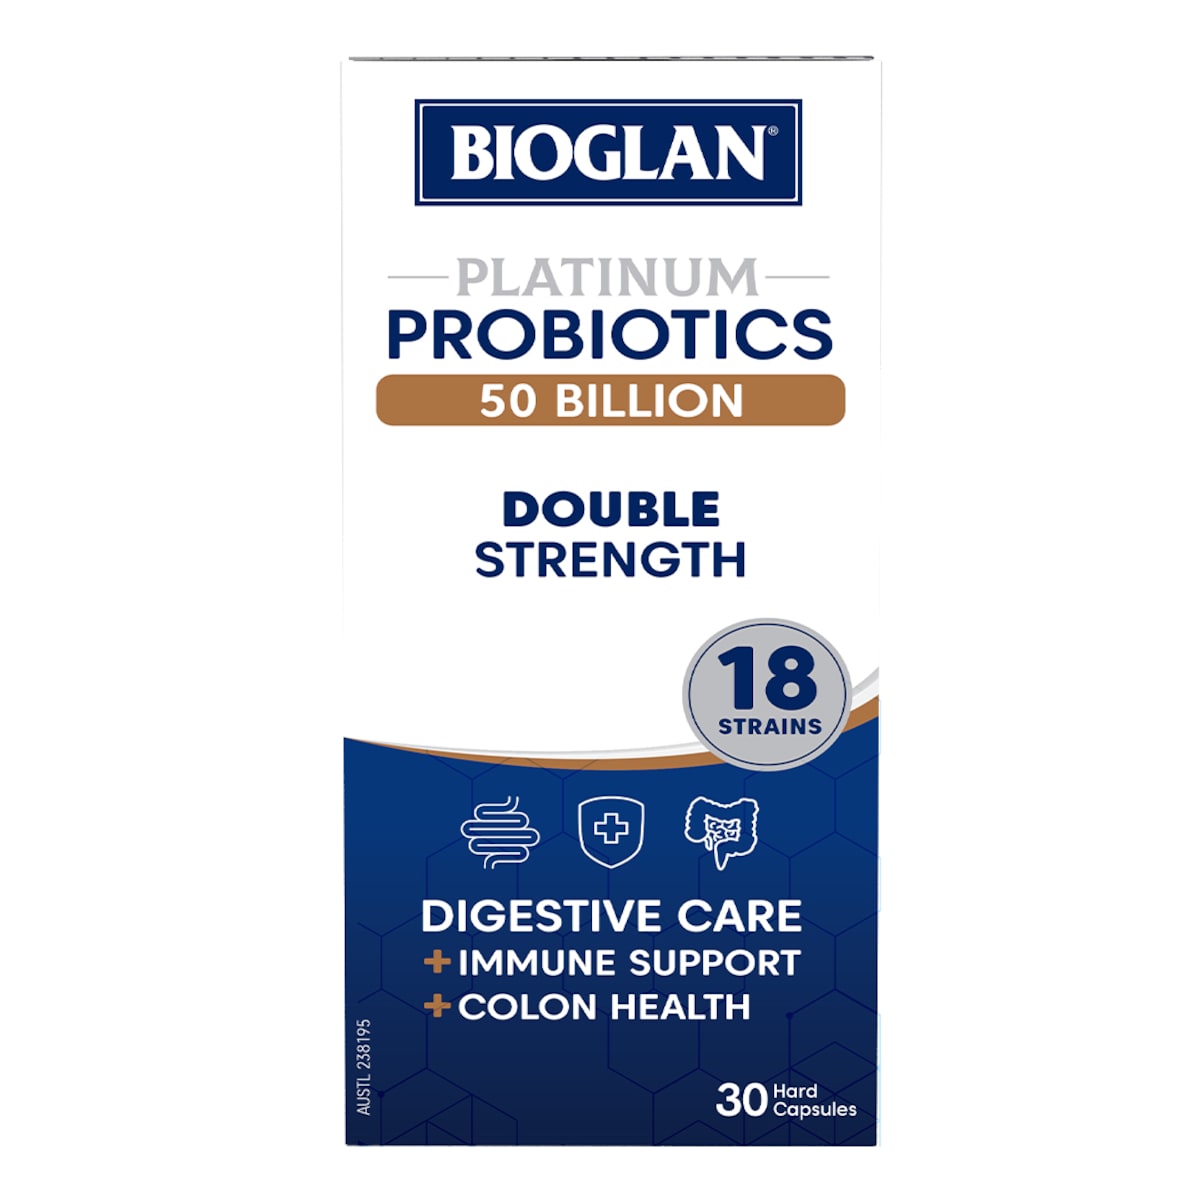 Bioglan Platinum Probiotics 50 Billion Double Strength 30 Capsules Australia